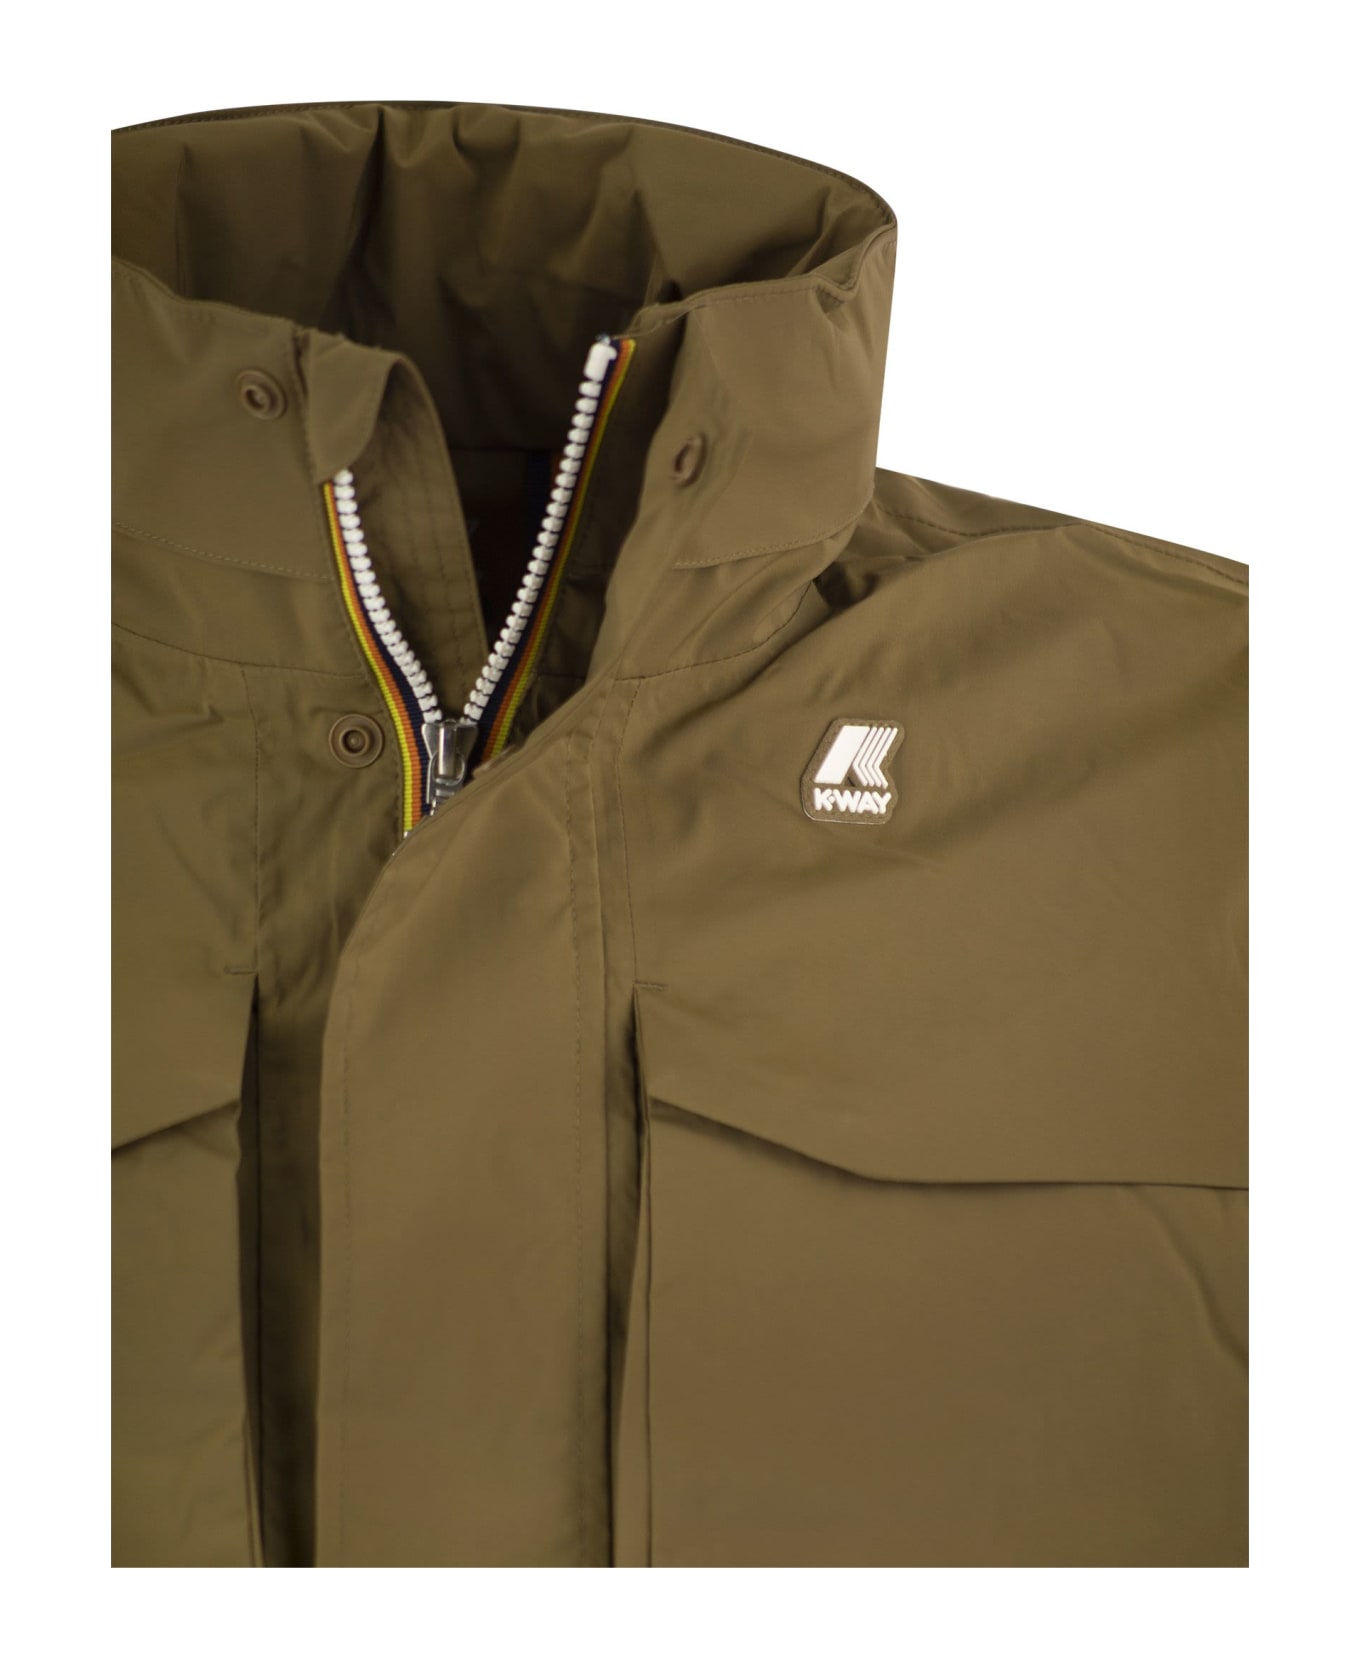 K-Way Manfield Jacket In Waterproof Fabric - Rope